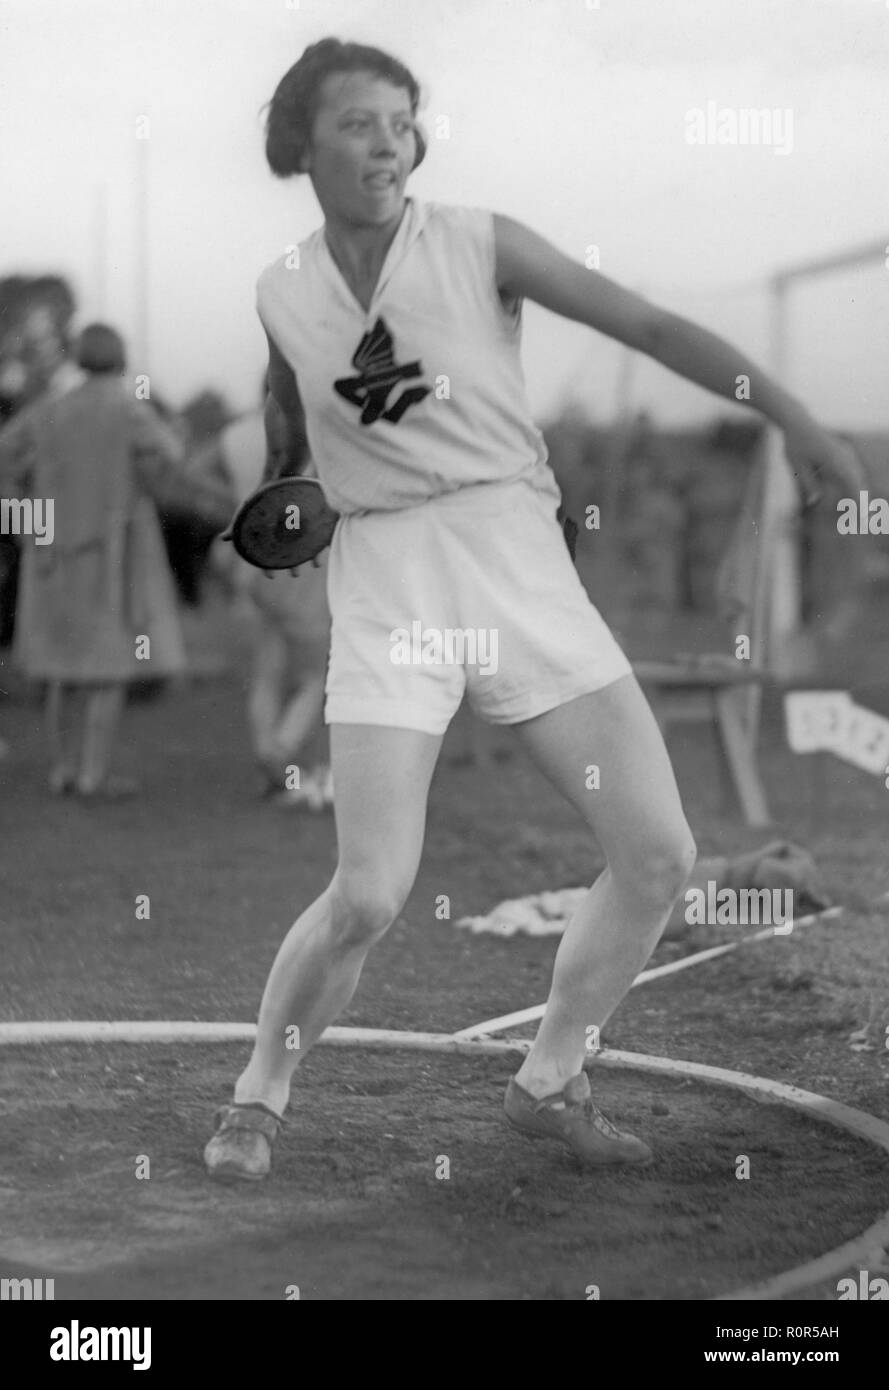 1930 Les femmes dans le sport. Champion olympique Maj Jacobsson, 1909-1996. Photographié dans les années 1930 lorsqu'il participe à un lancer du disque competetion. Banque D'Images